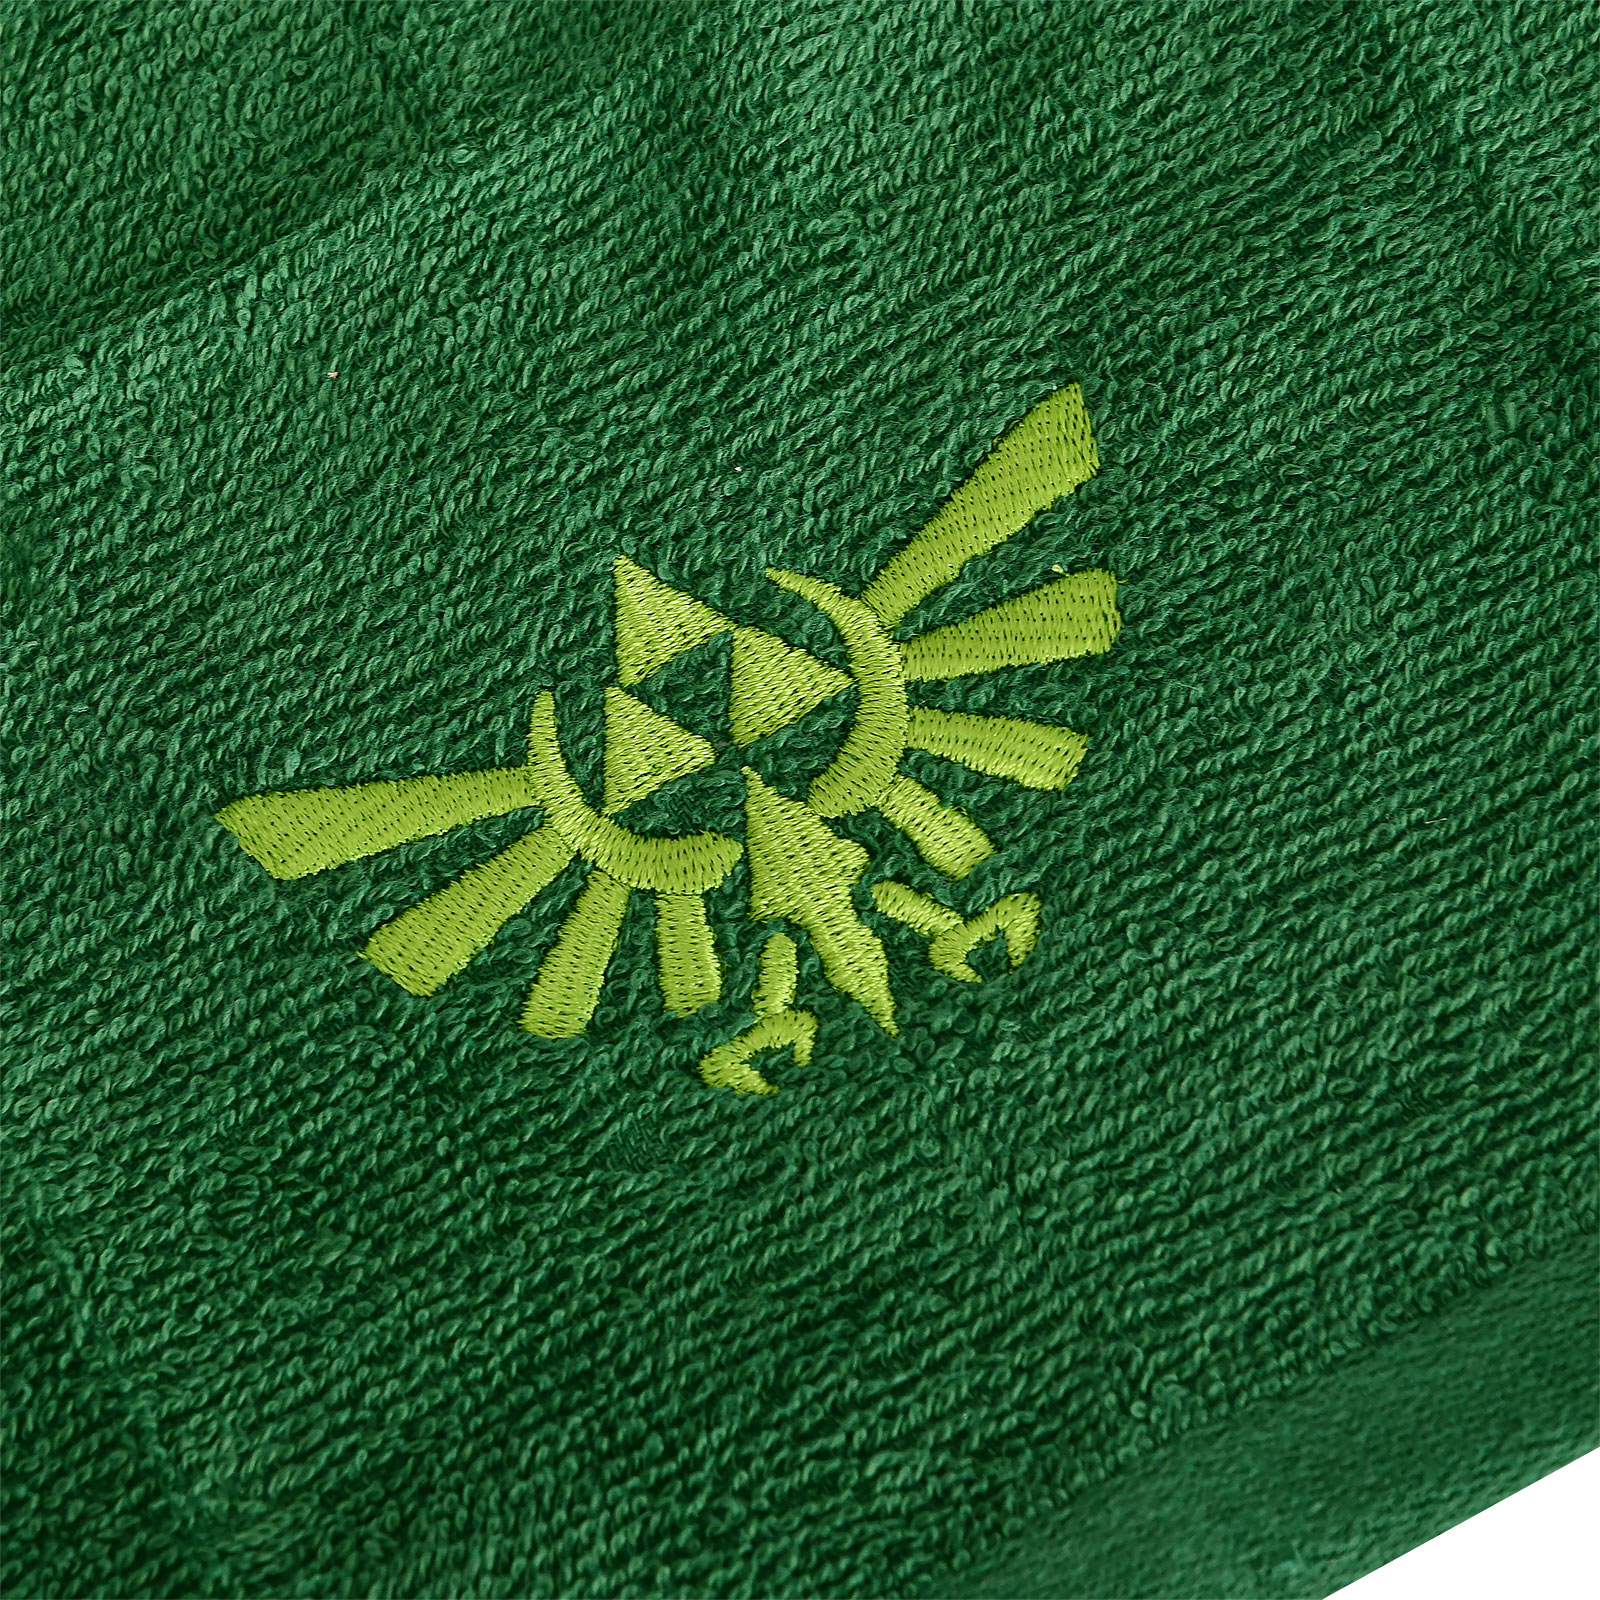 Zelda - Hyrule Logo Handtücher mit Waschlappen 3er Set